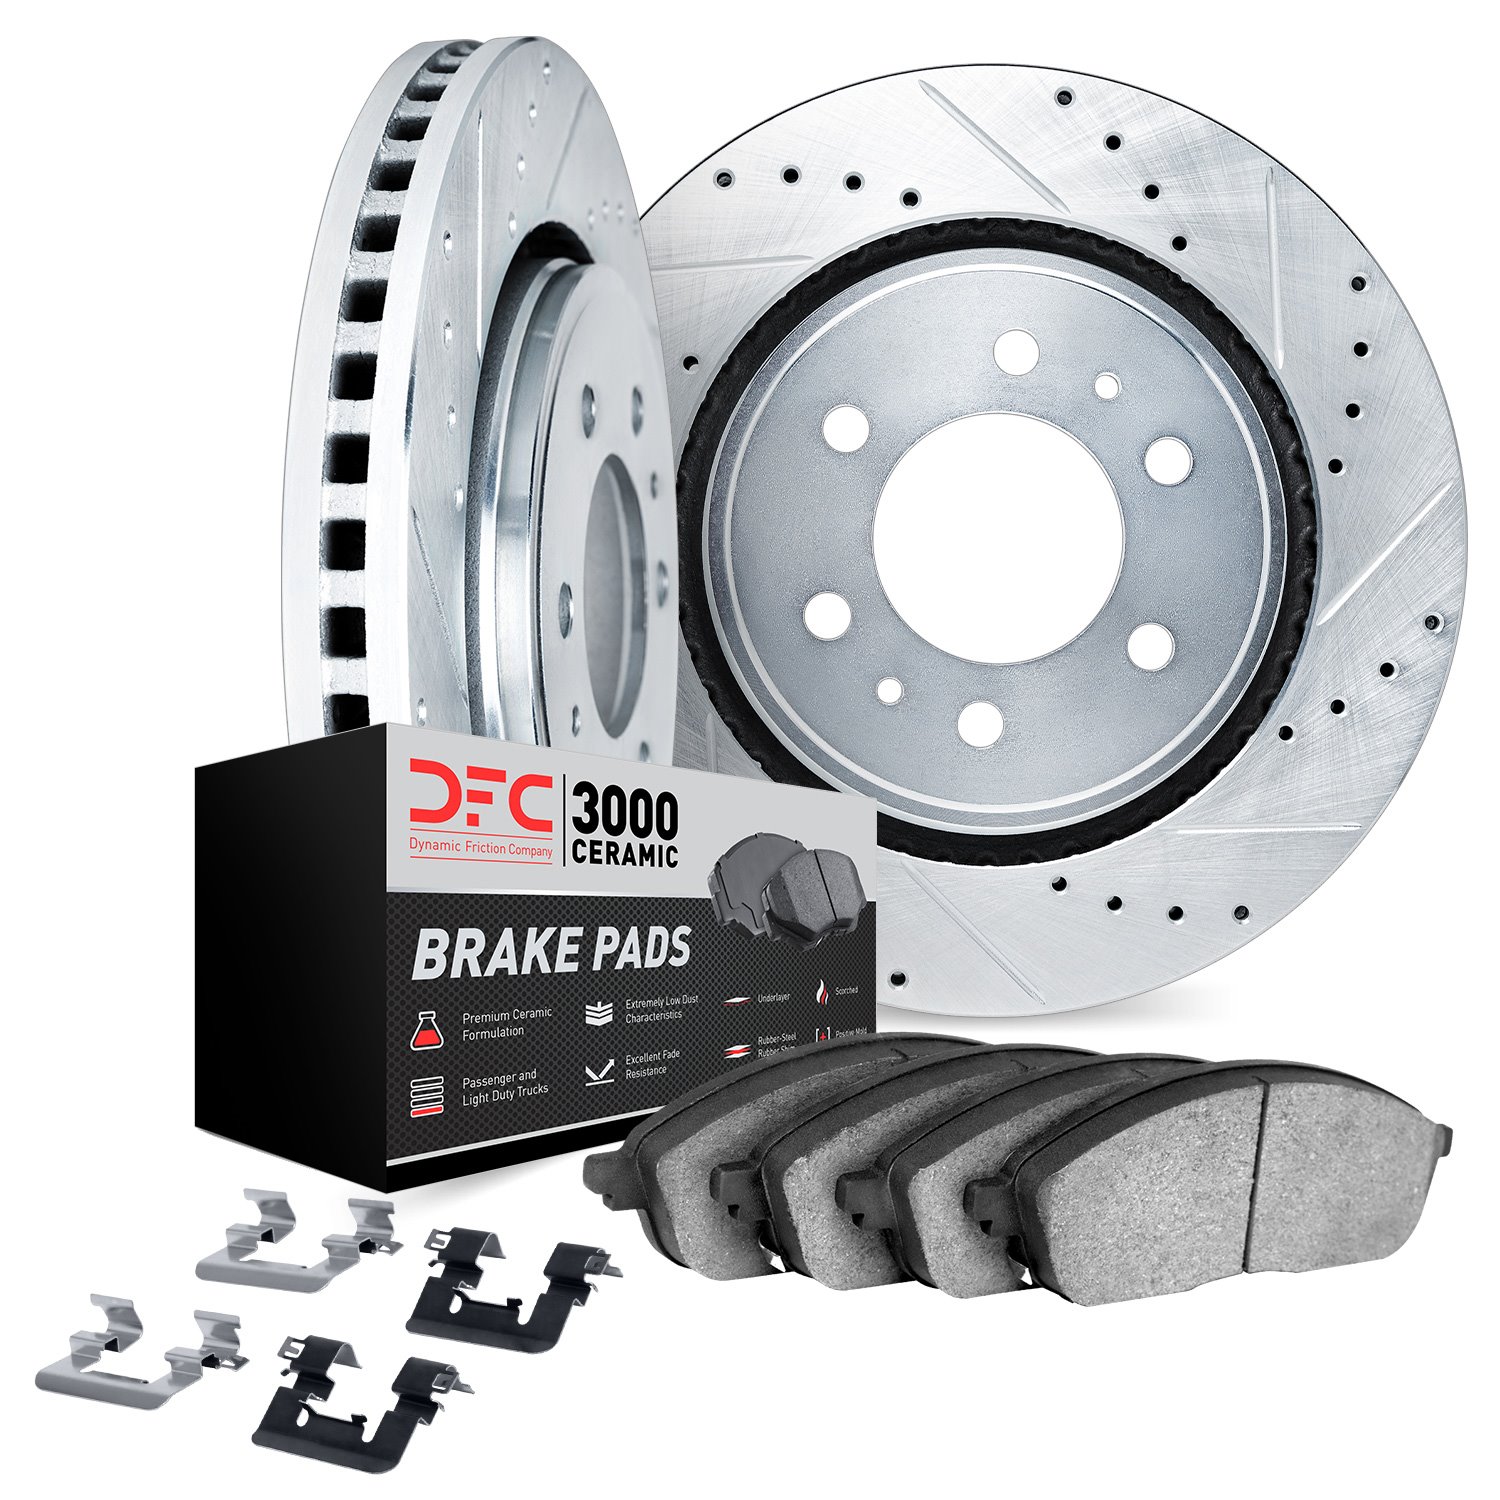 7312-92014 Drilled/Slotted Brake Rotor with 3000-Series Ceramic Brake Pads Kit & Hardware [Silver], 2013-2015 Lexus/Toyota/Scion